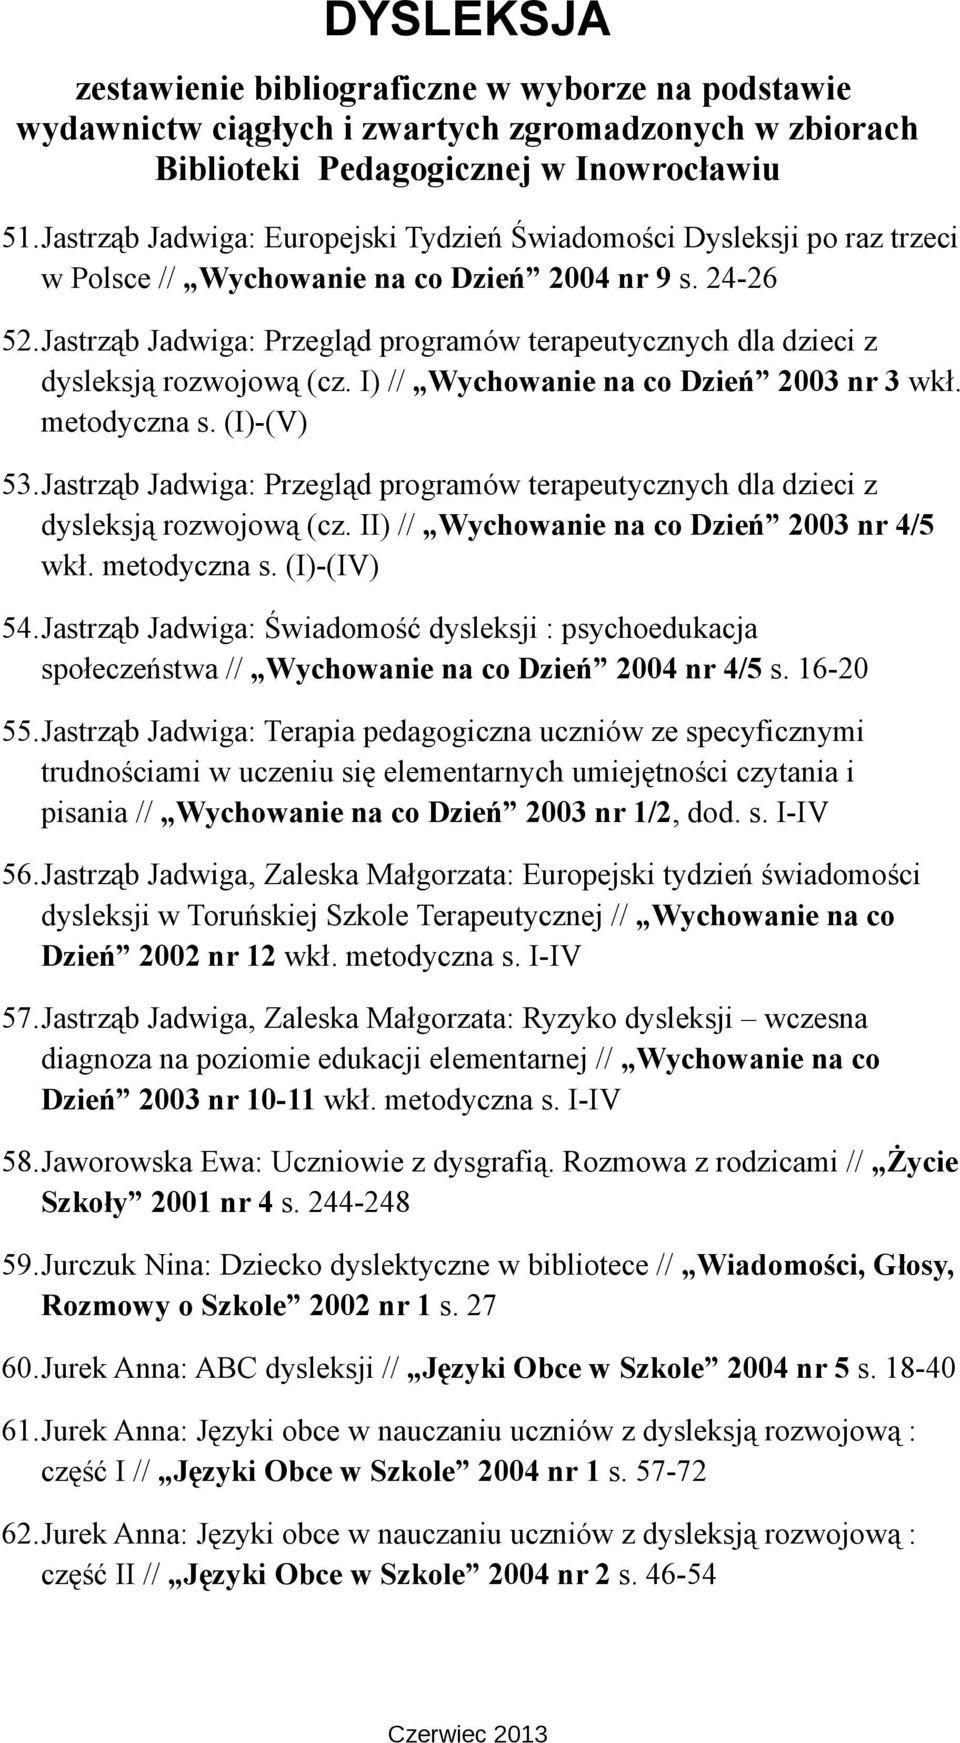 Jastrząb Jadwiga: Przegląd programów terapeutycznych dla dzieci z dysleksją rozwojową (cz. II) // Wychowanie na co Dzień 2003 nr 4/5 wkł. metodyczna s. (I)-(IV) 54.